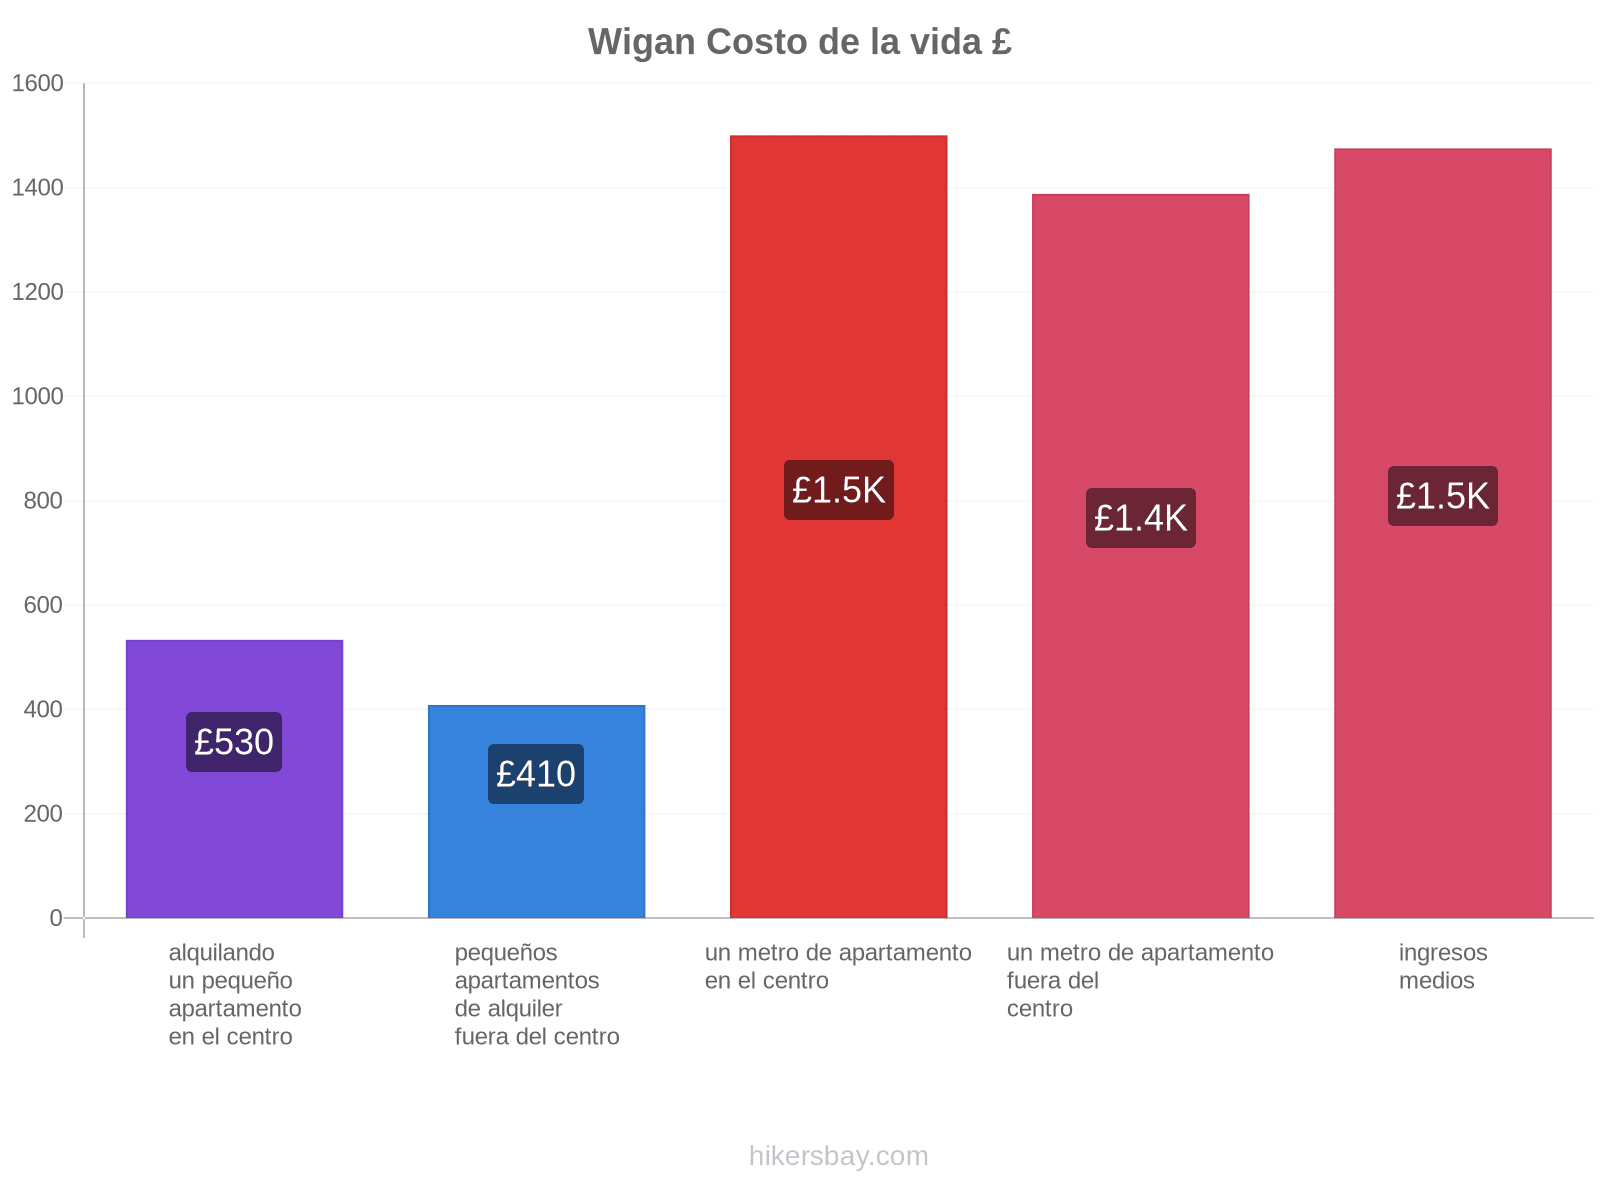 Wigan costo de la vida hikersbay.com